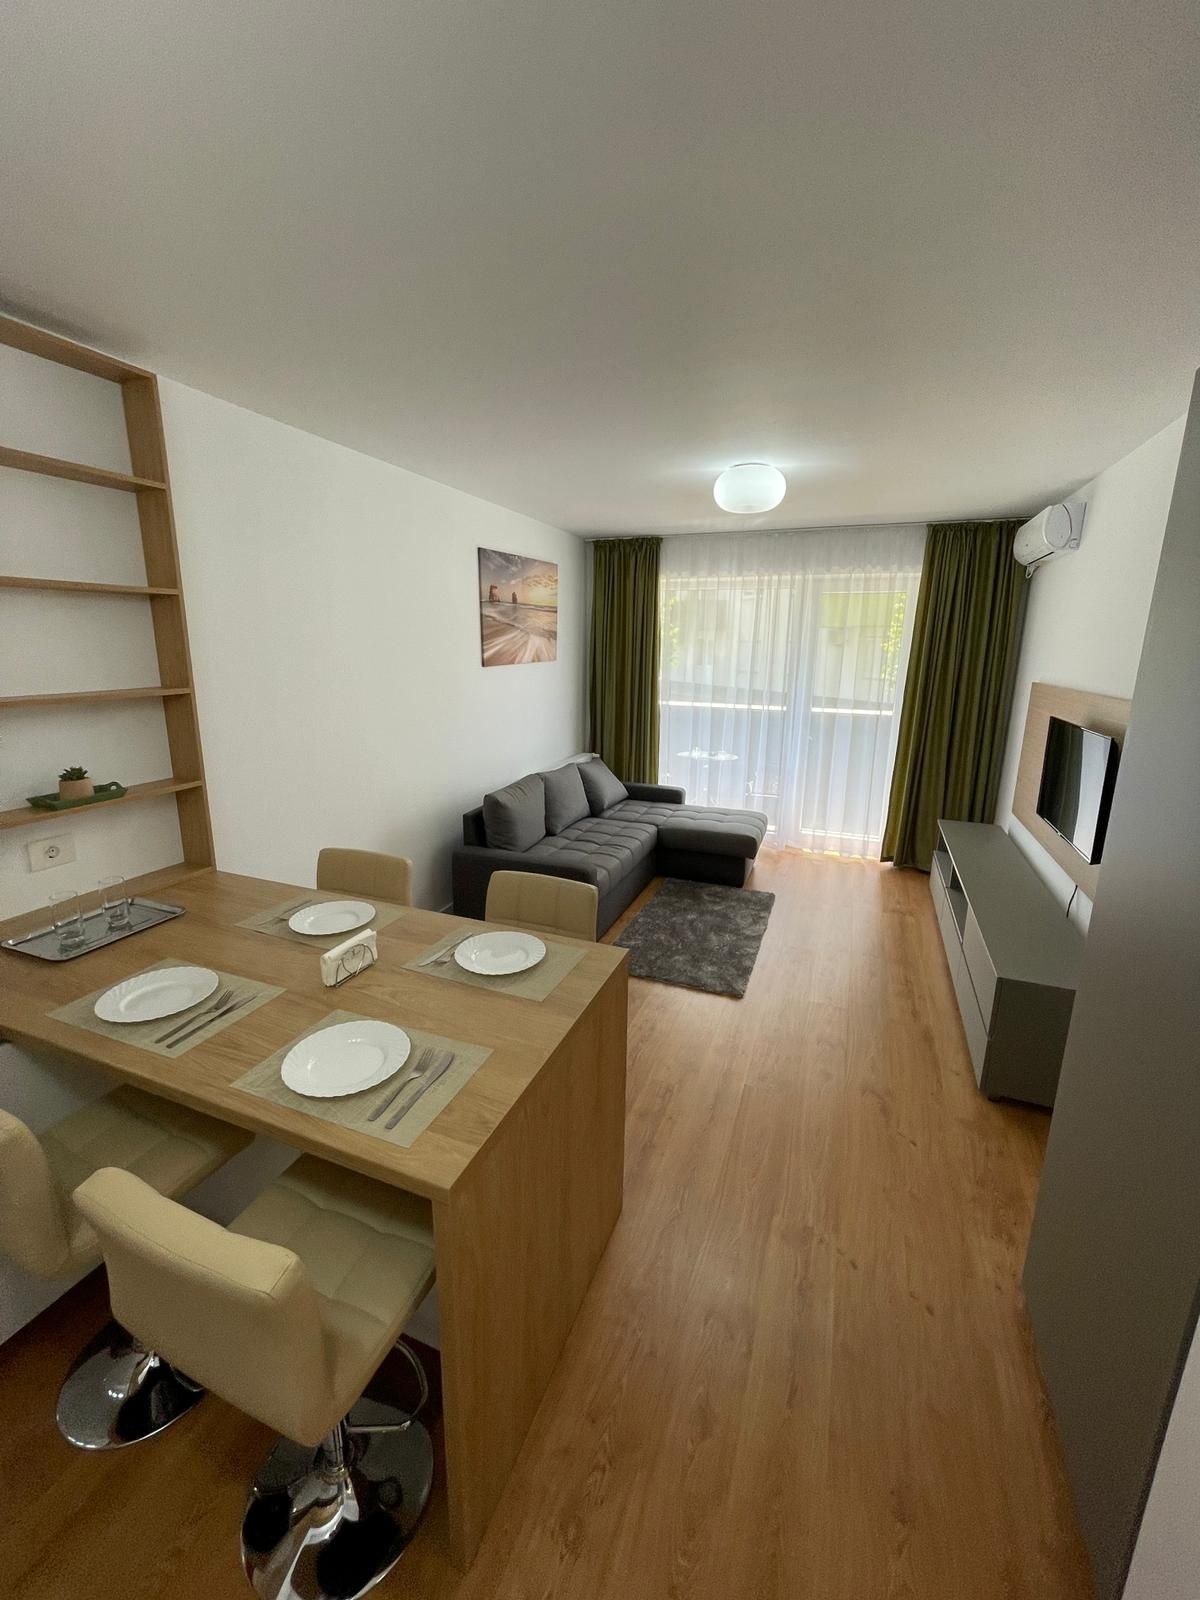 Apartament NOU cu 2 camere in regim hotelier Oradea